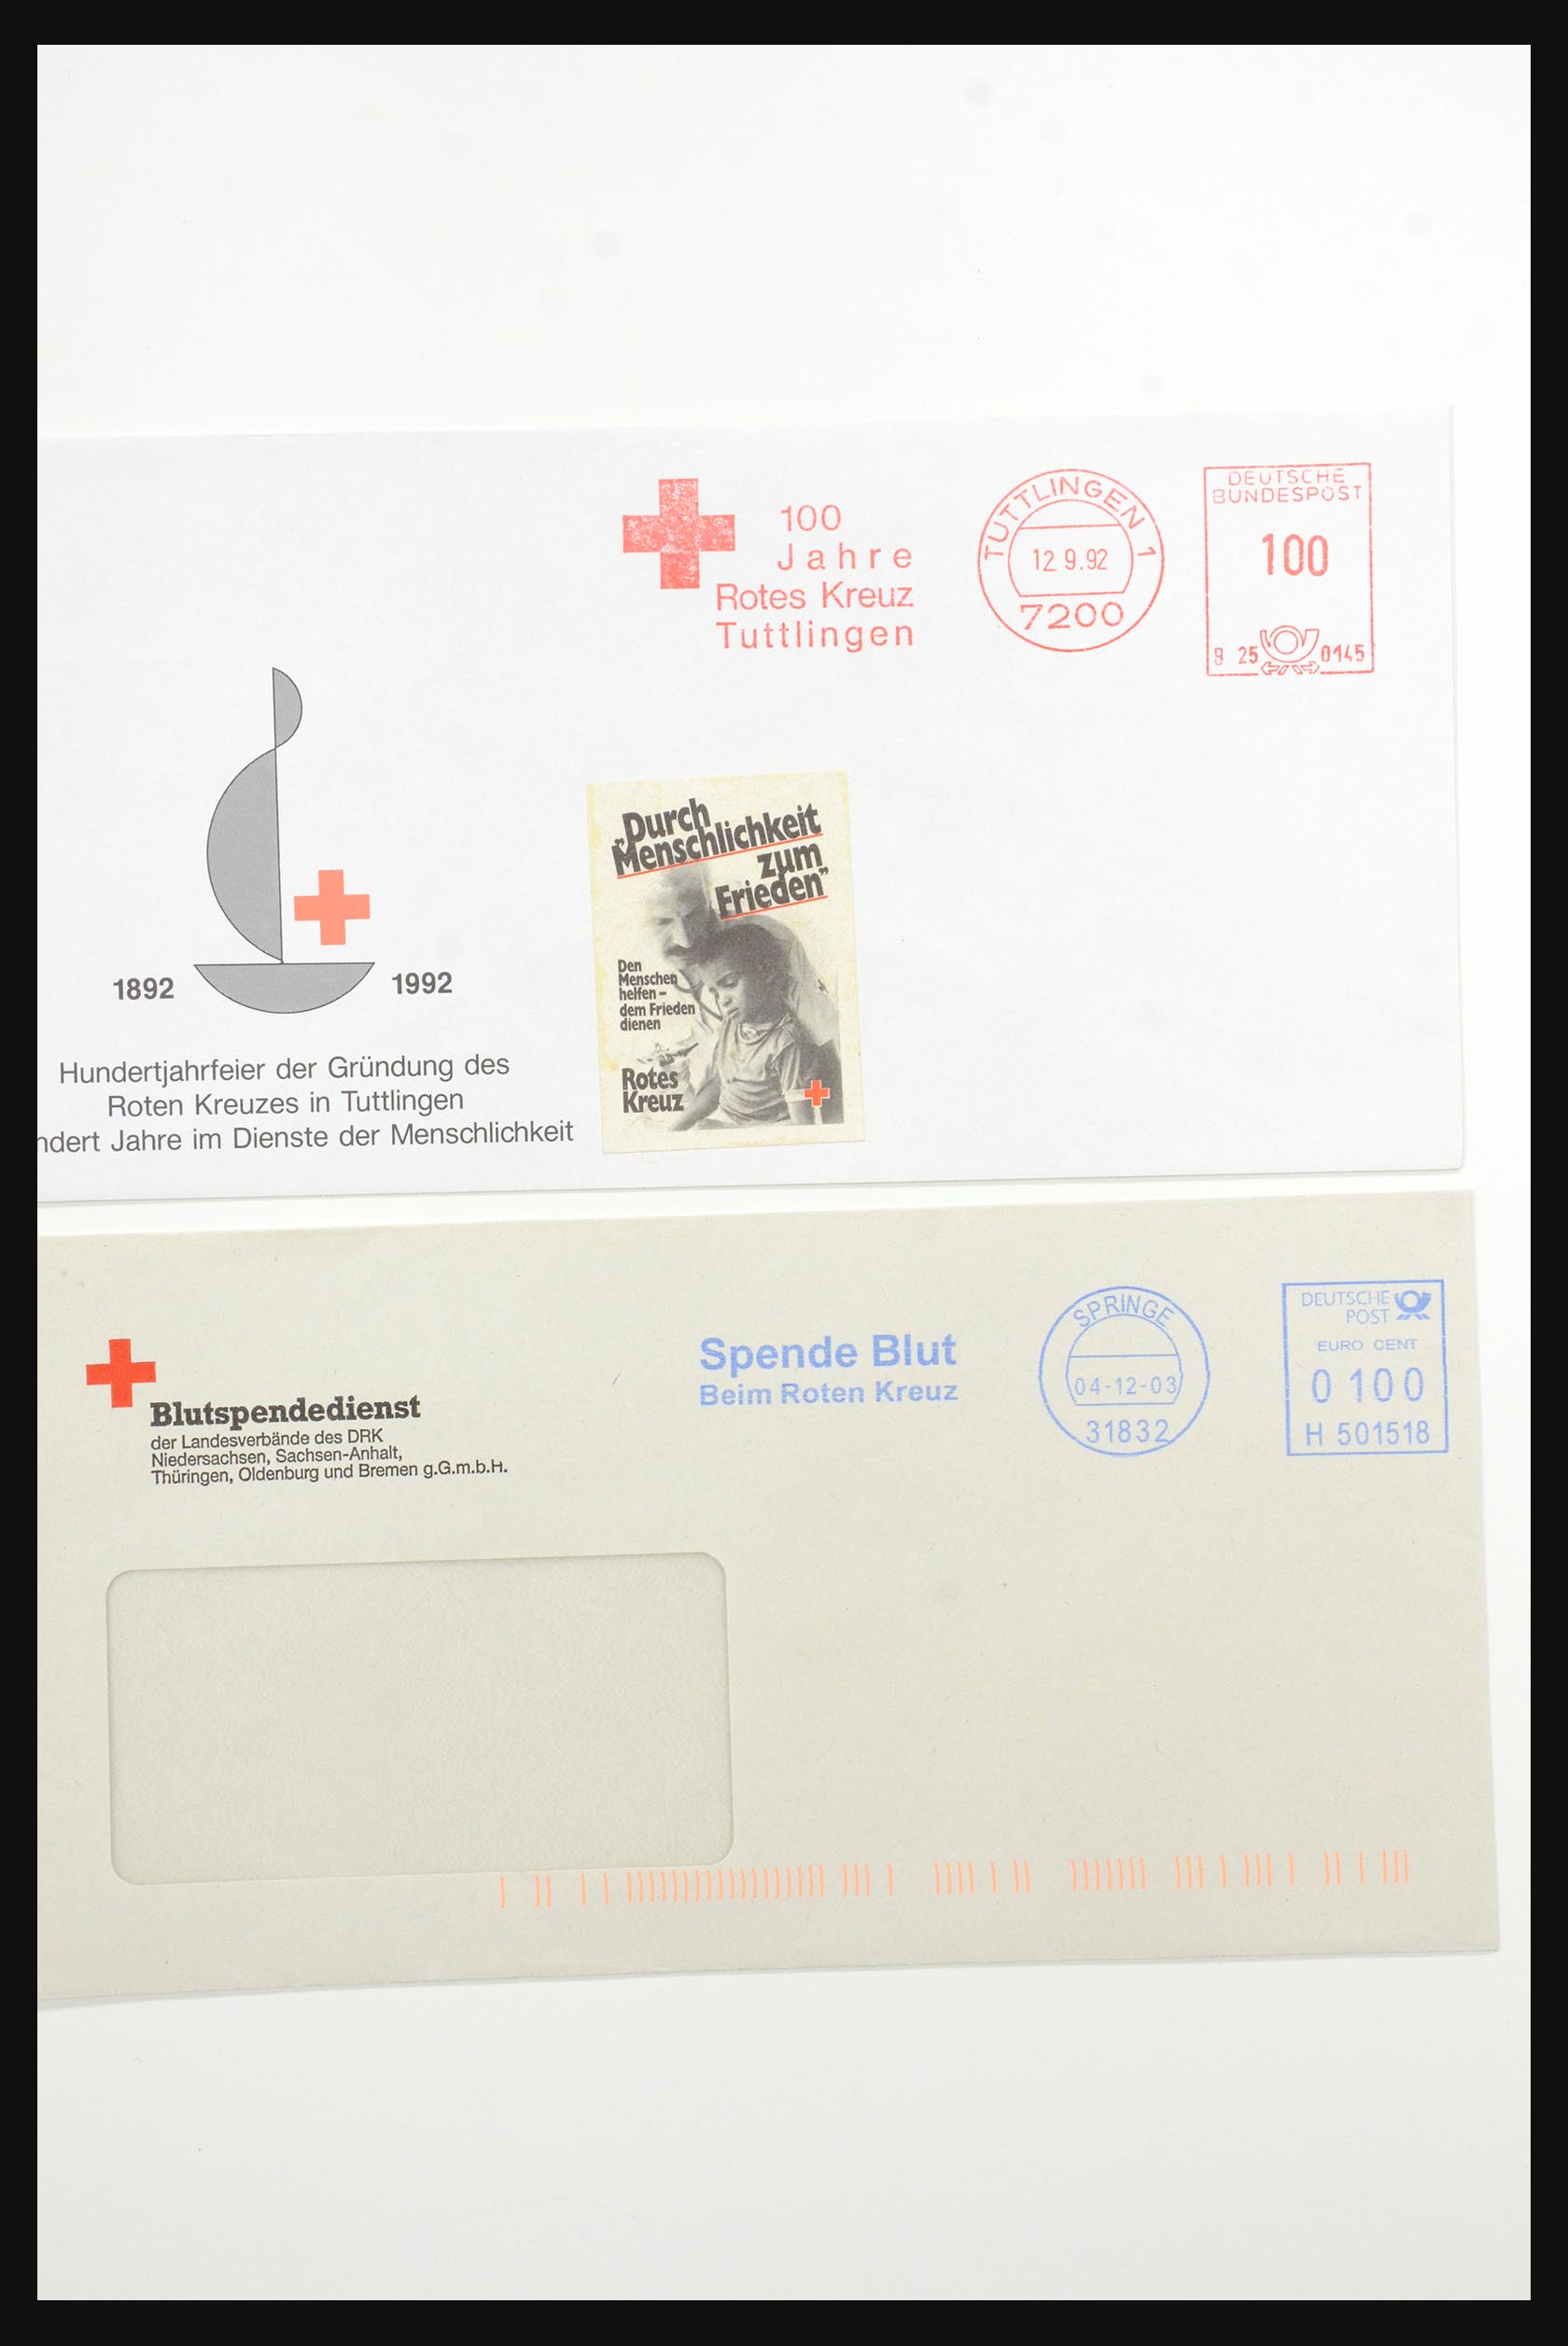 31365 1055 - 31365 Rode kruis brieven 1905-1975.